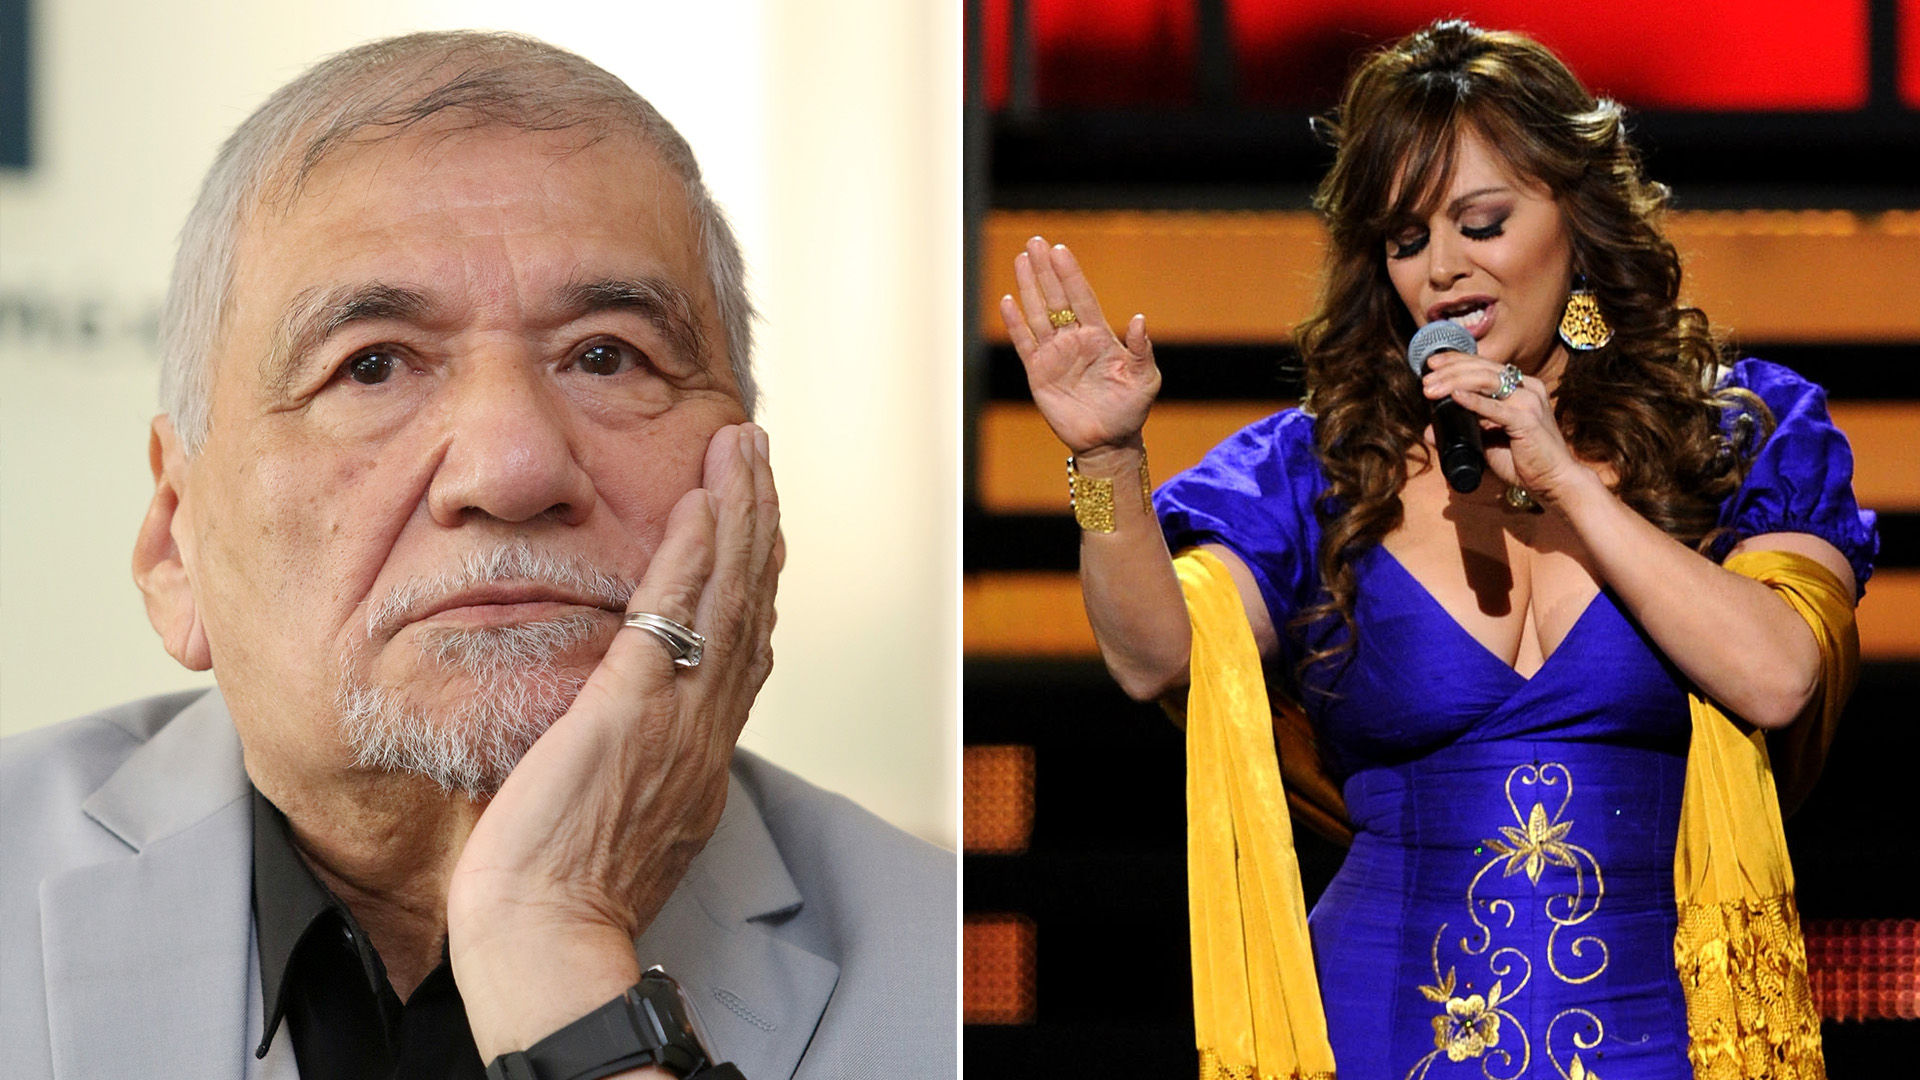 Martín Urieta señaló que la Dinastía Rivera son parte de los cantantes que "abusan" de los compositores (Fotos: Getty Images)